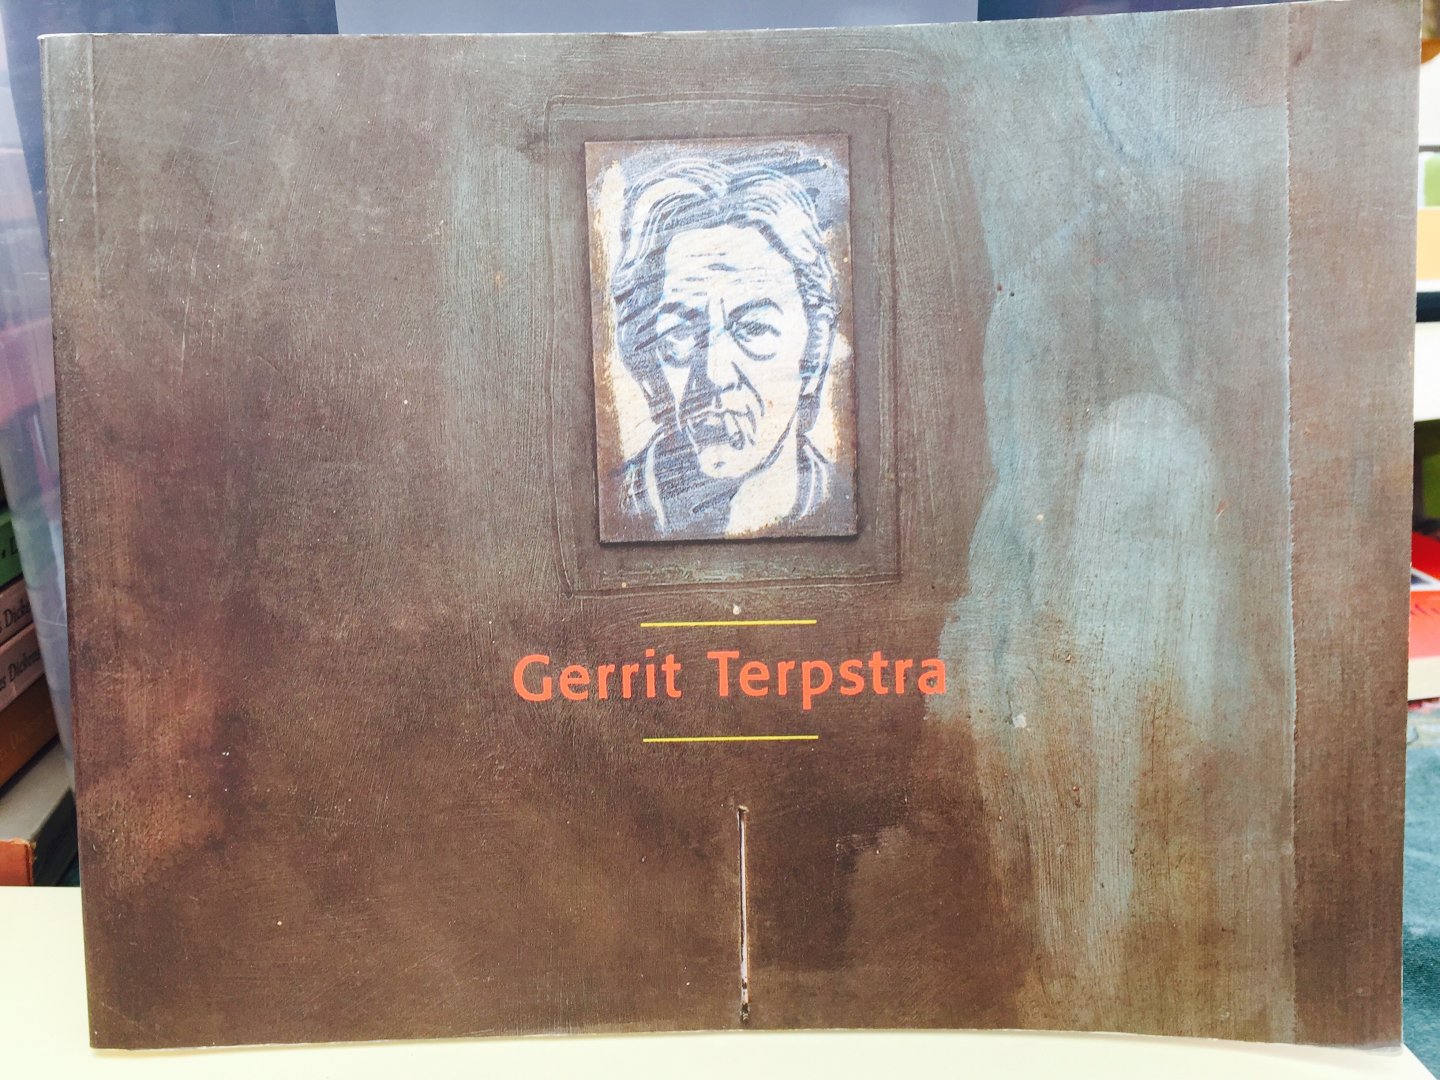  - GERRIT TERPSTRA